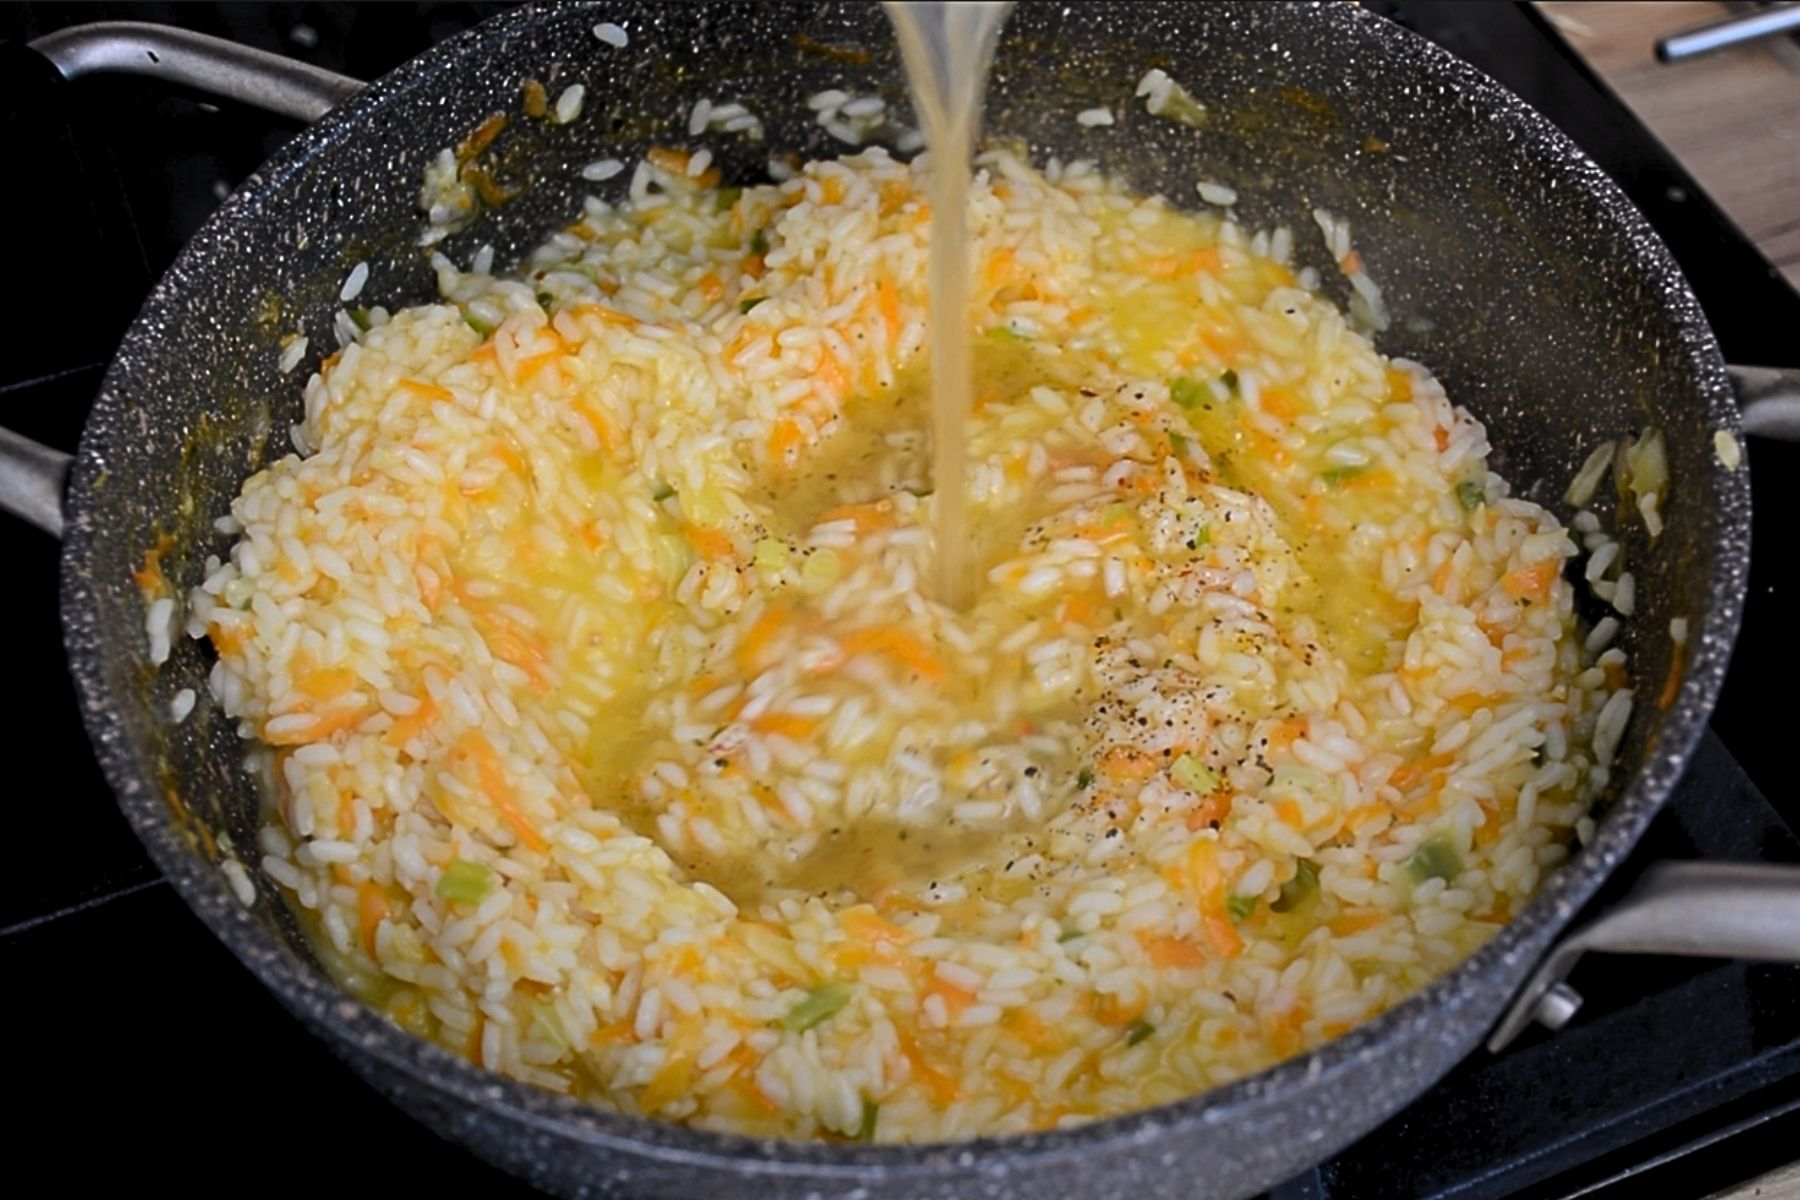 supa fierbinte turnata peste orezz cu legume